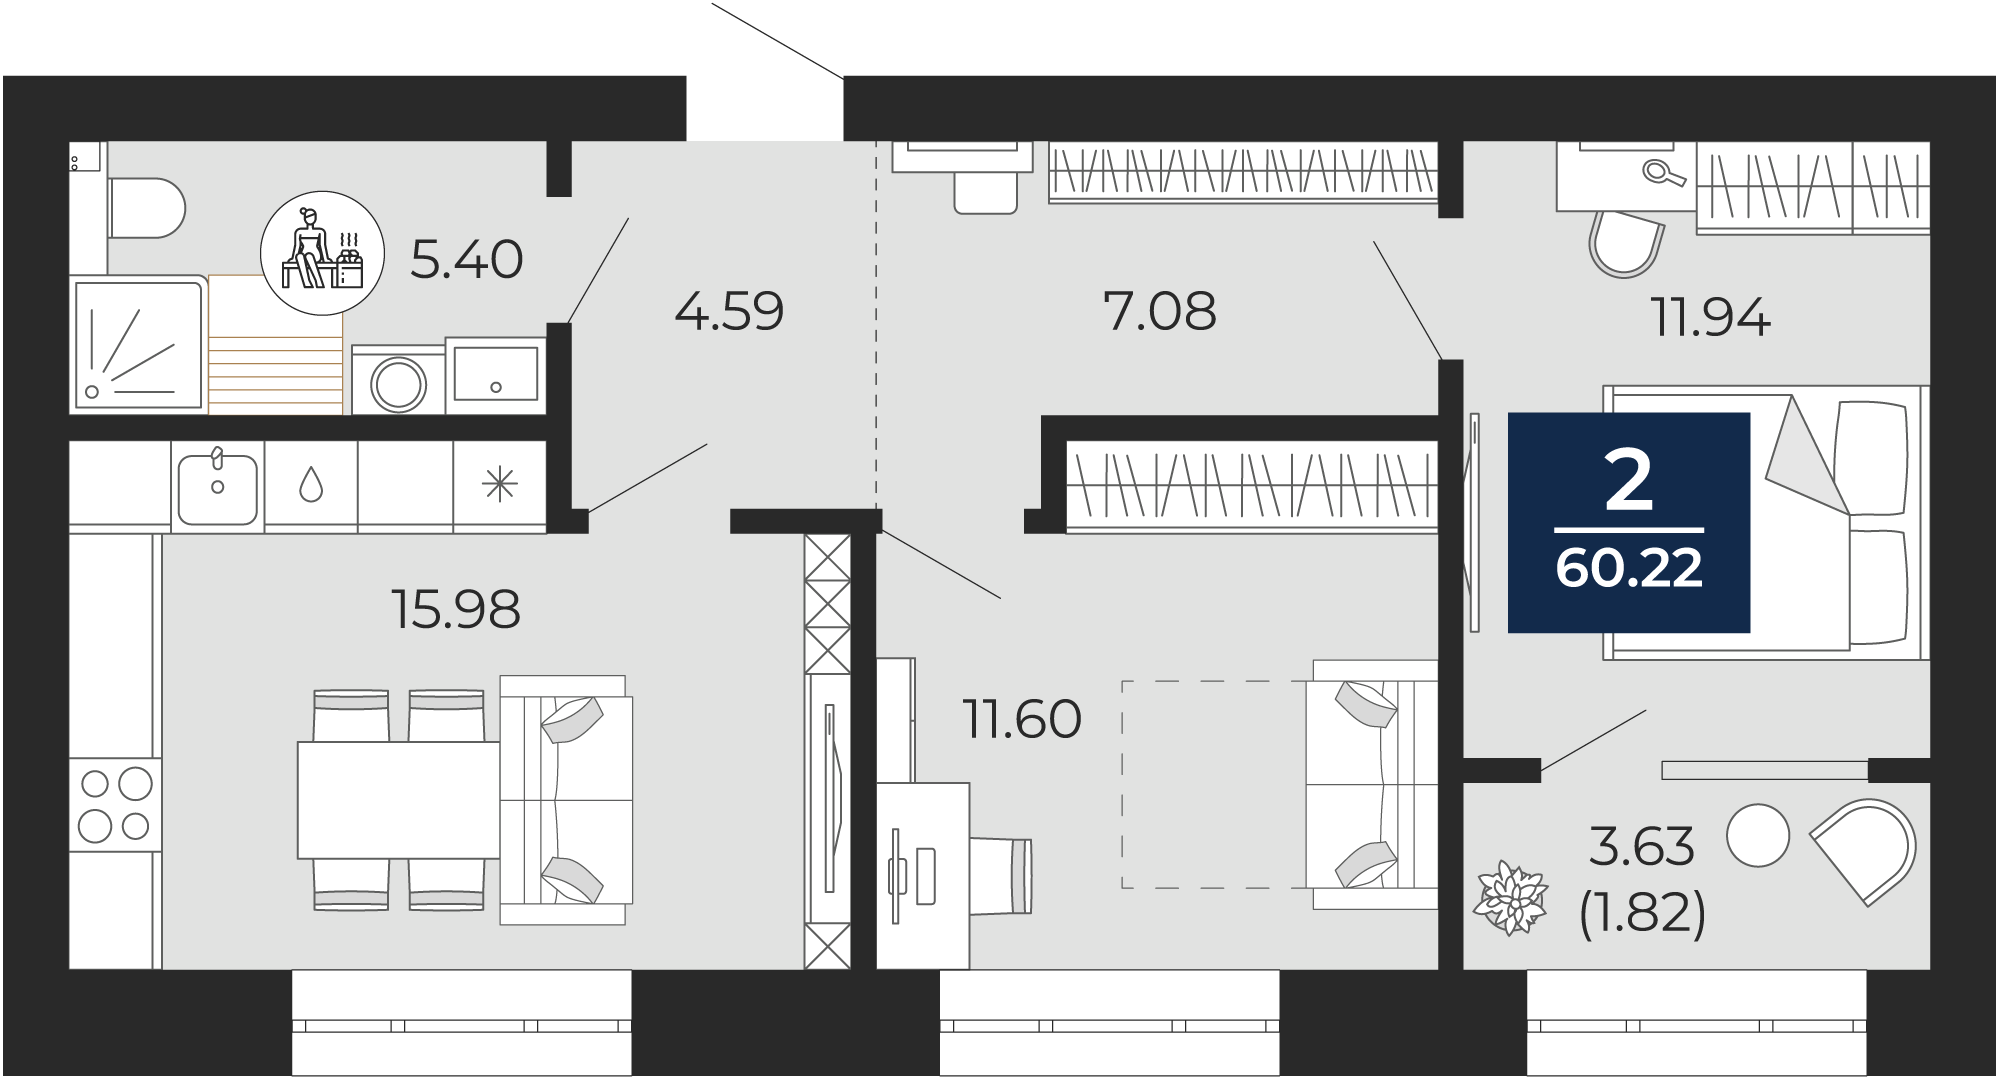 Квартира № 235, 2-комнатная, 60.22 кв. м, 7 этаж